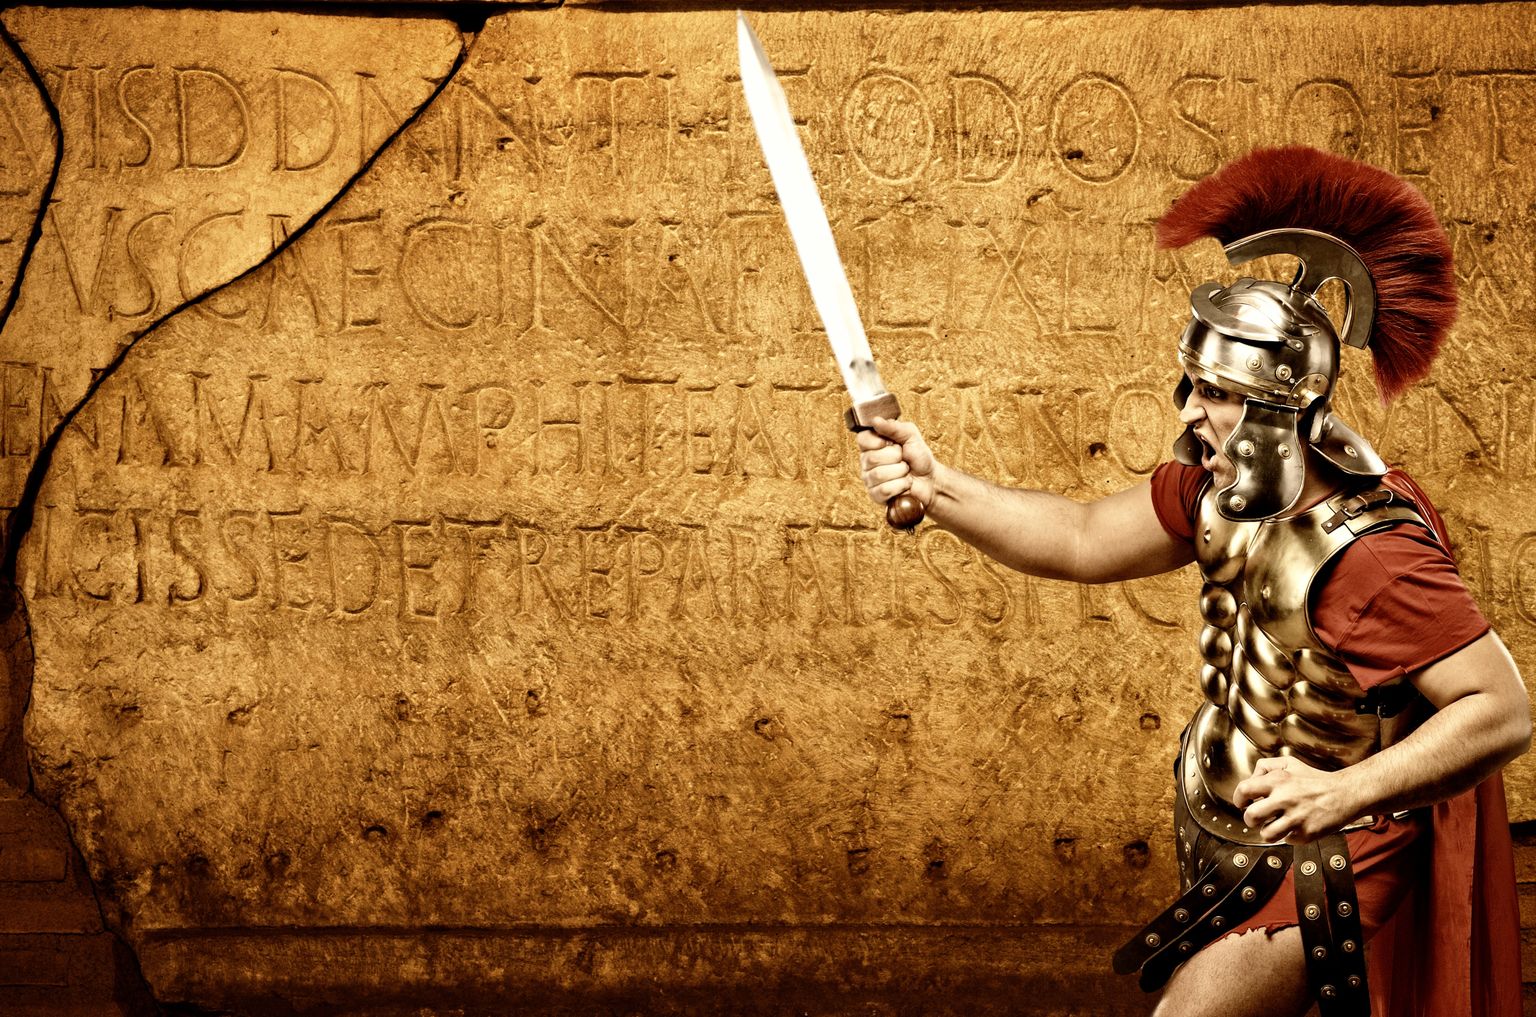 Arvutijoonistus Vana-Rooma sõdurist. Pilt on illustreeriv